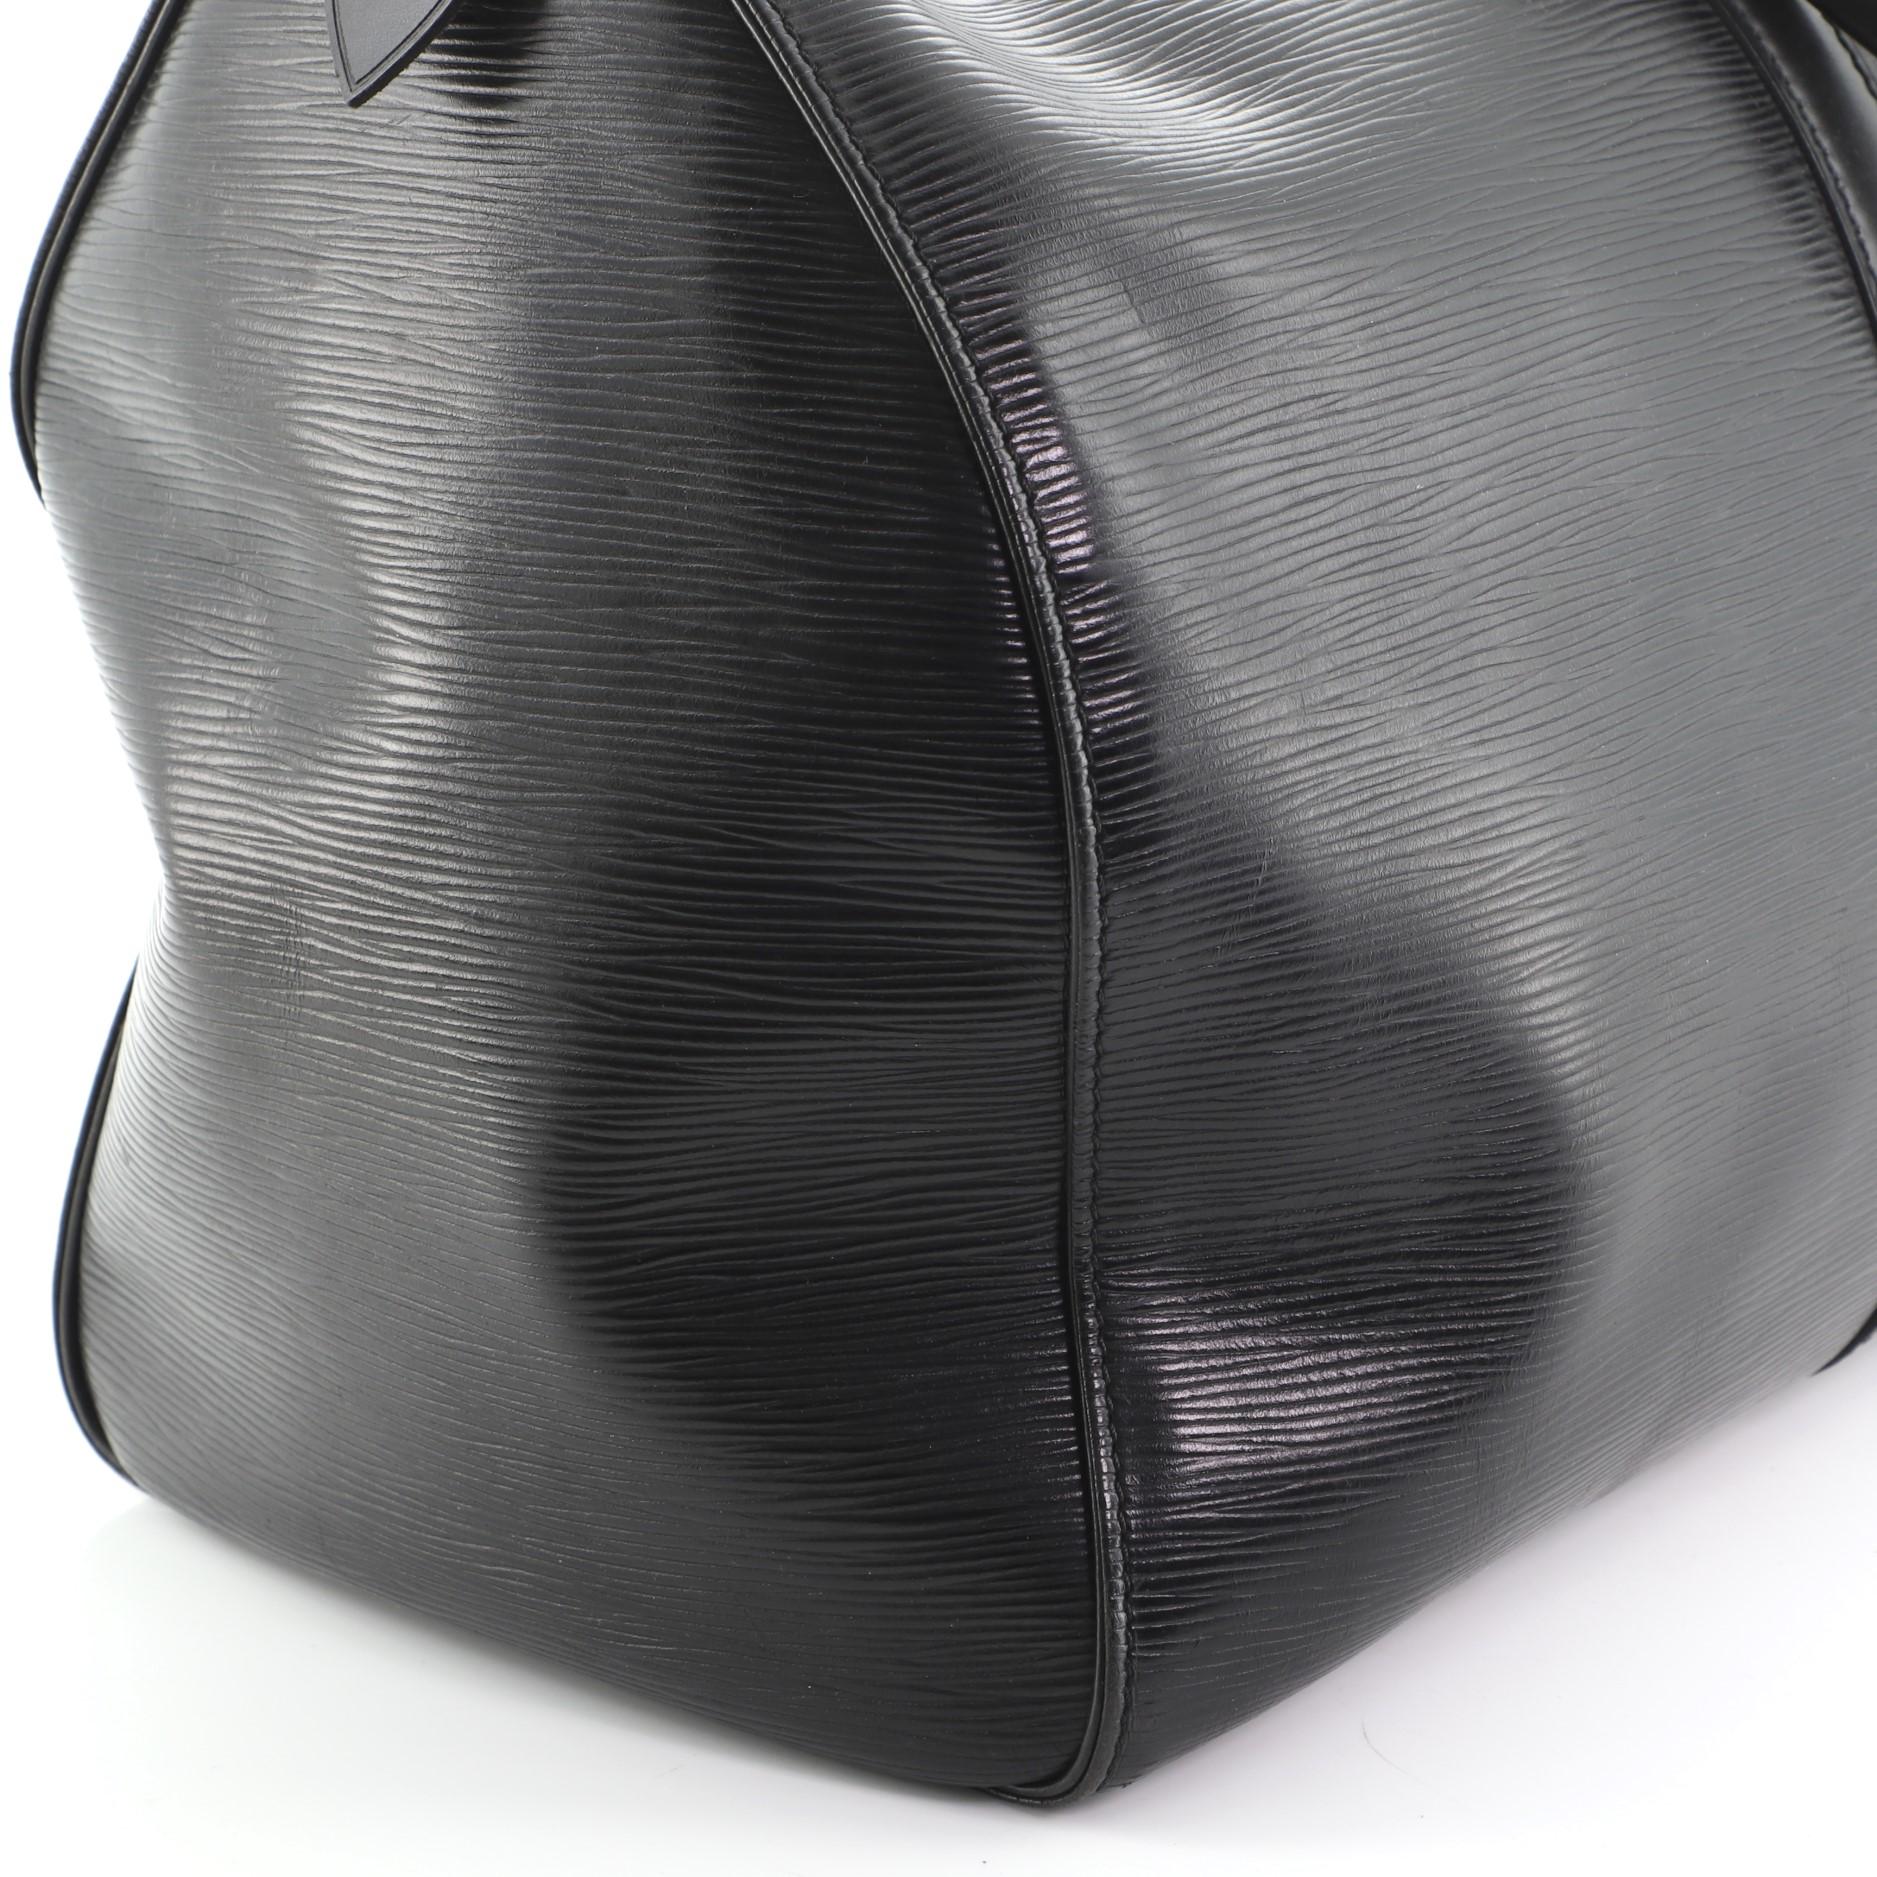  Louis Vuitton Keepall Bag Epi Leather 45 4